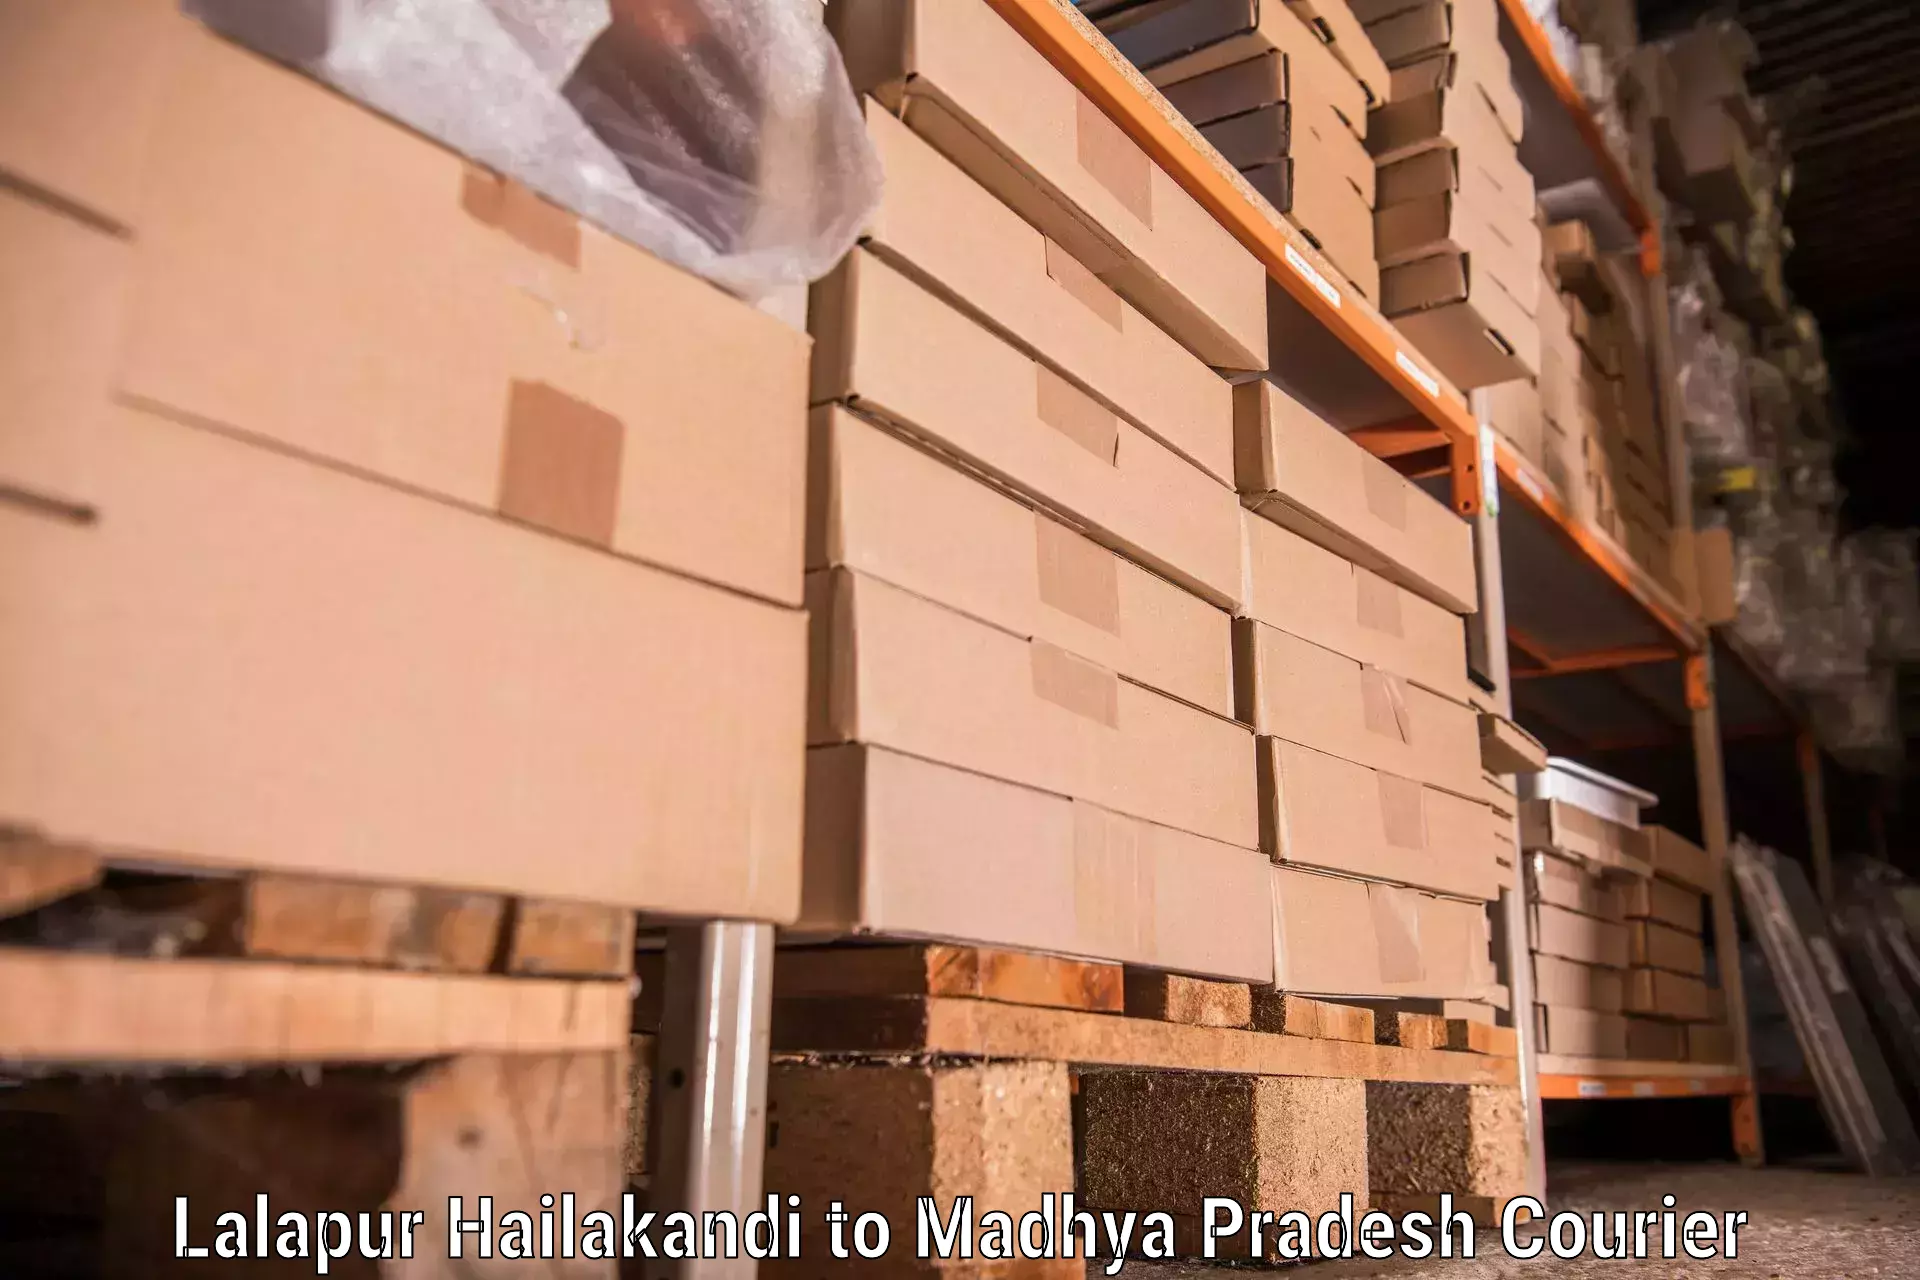 Quality moving and storage Lalapur Hailakandi to Ratlam